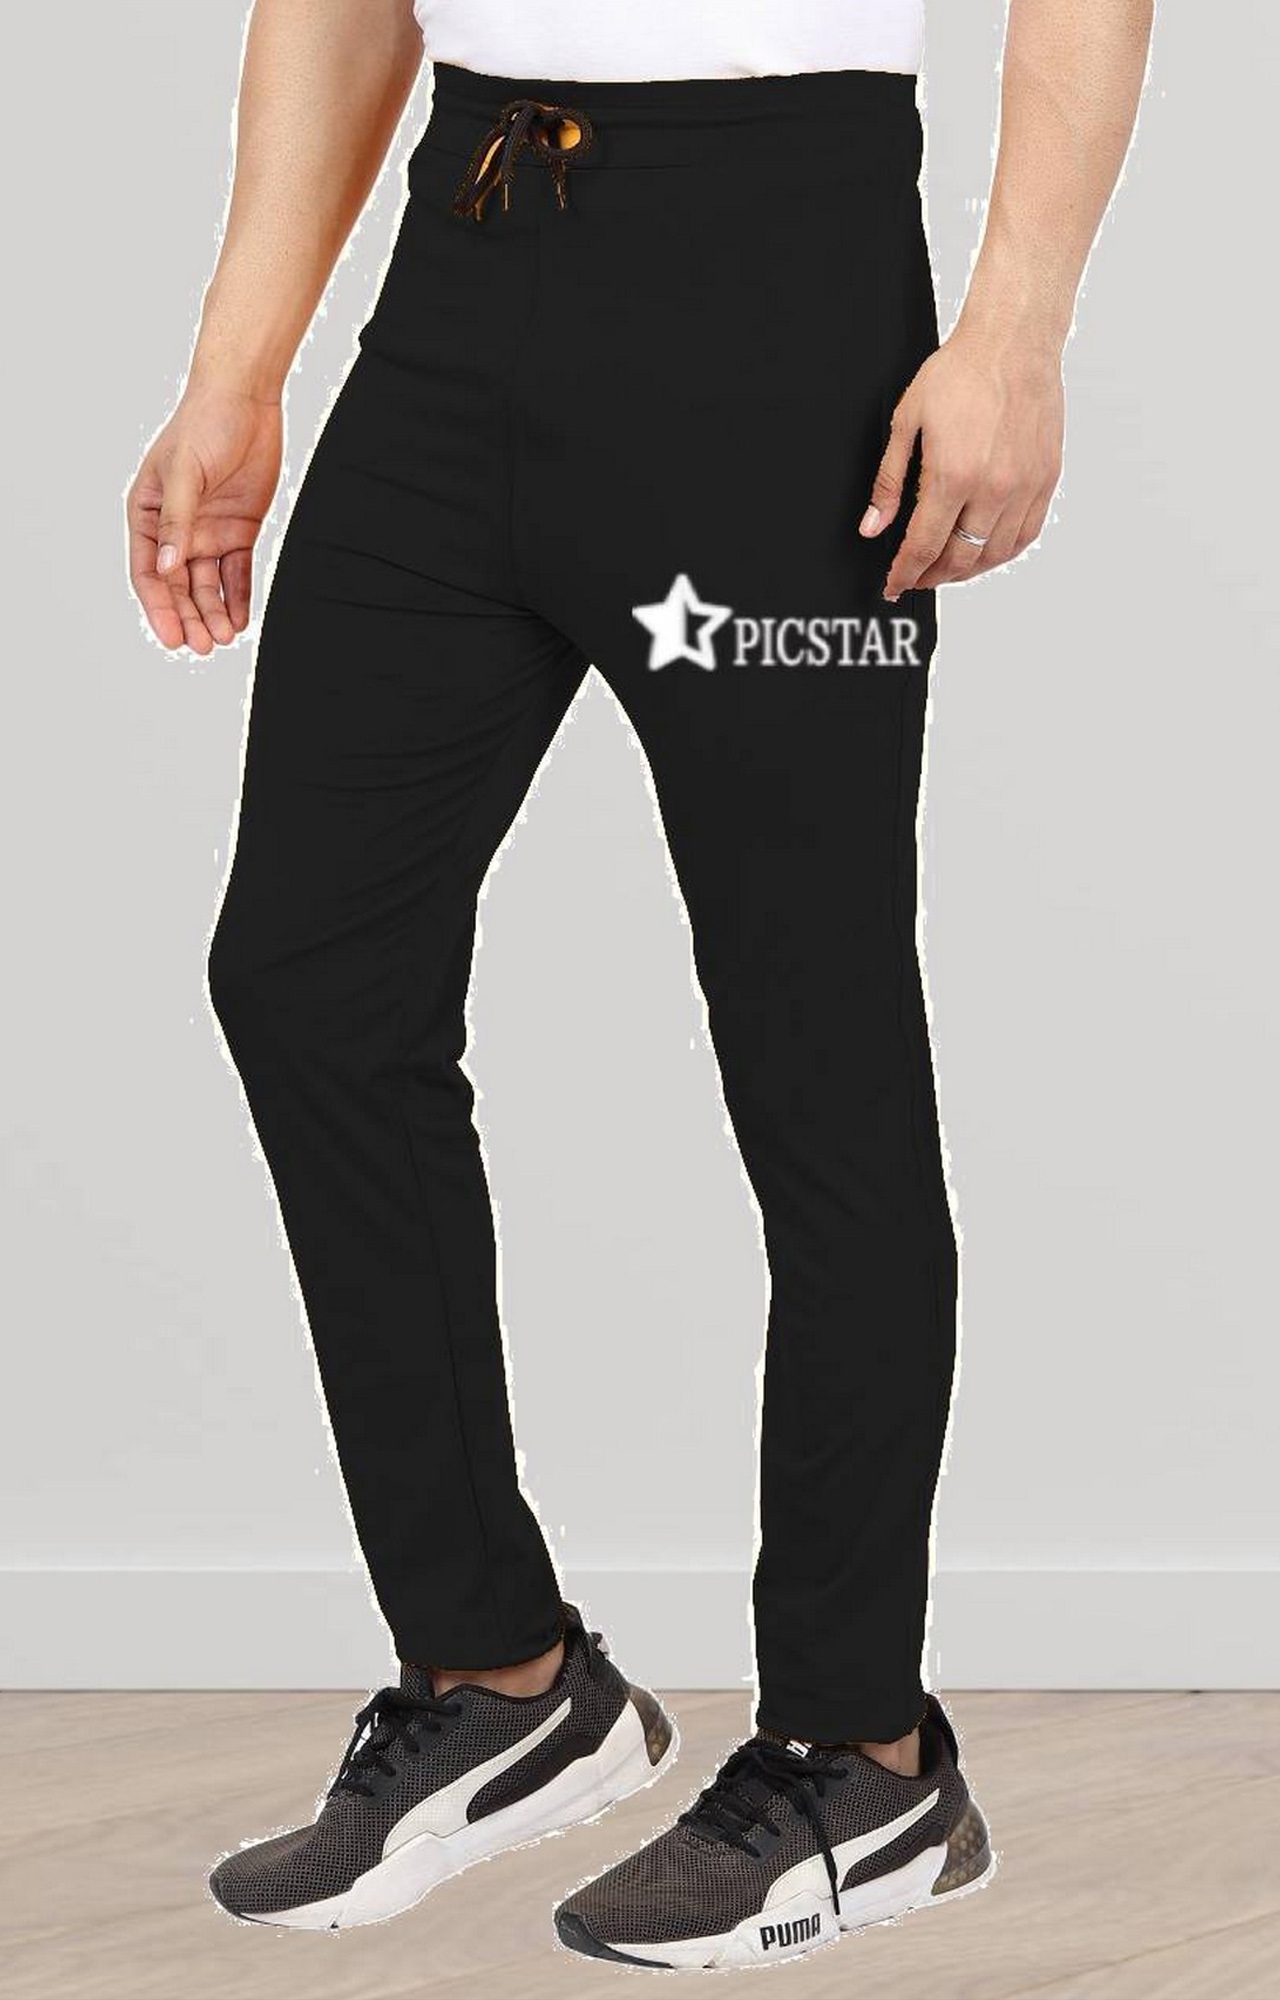 Picstar | Picstar Fox Black Men's Track pant 2